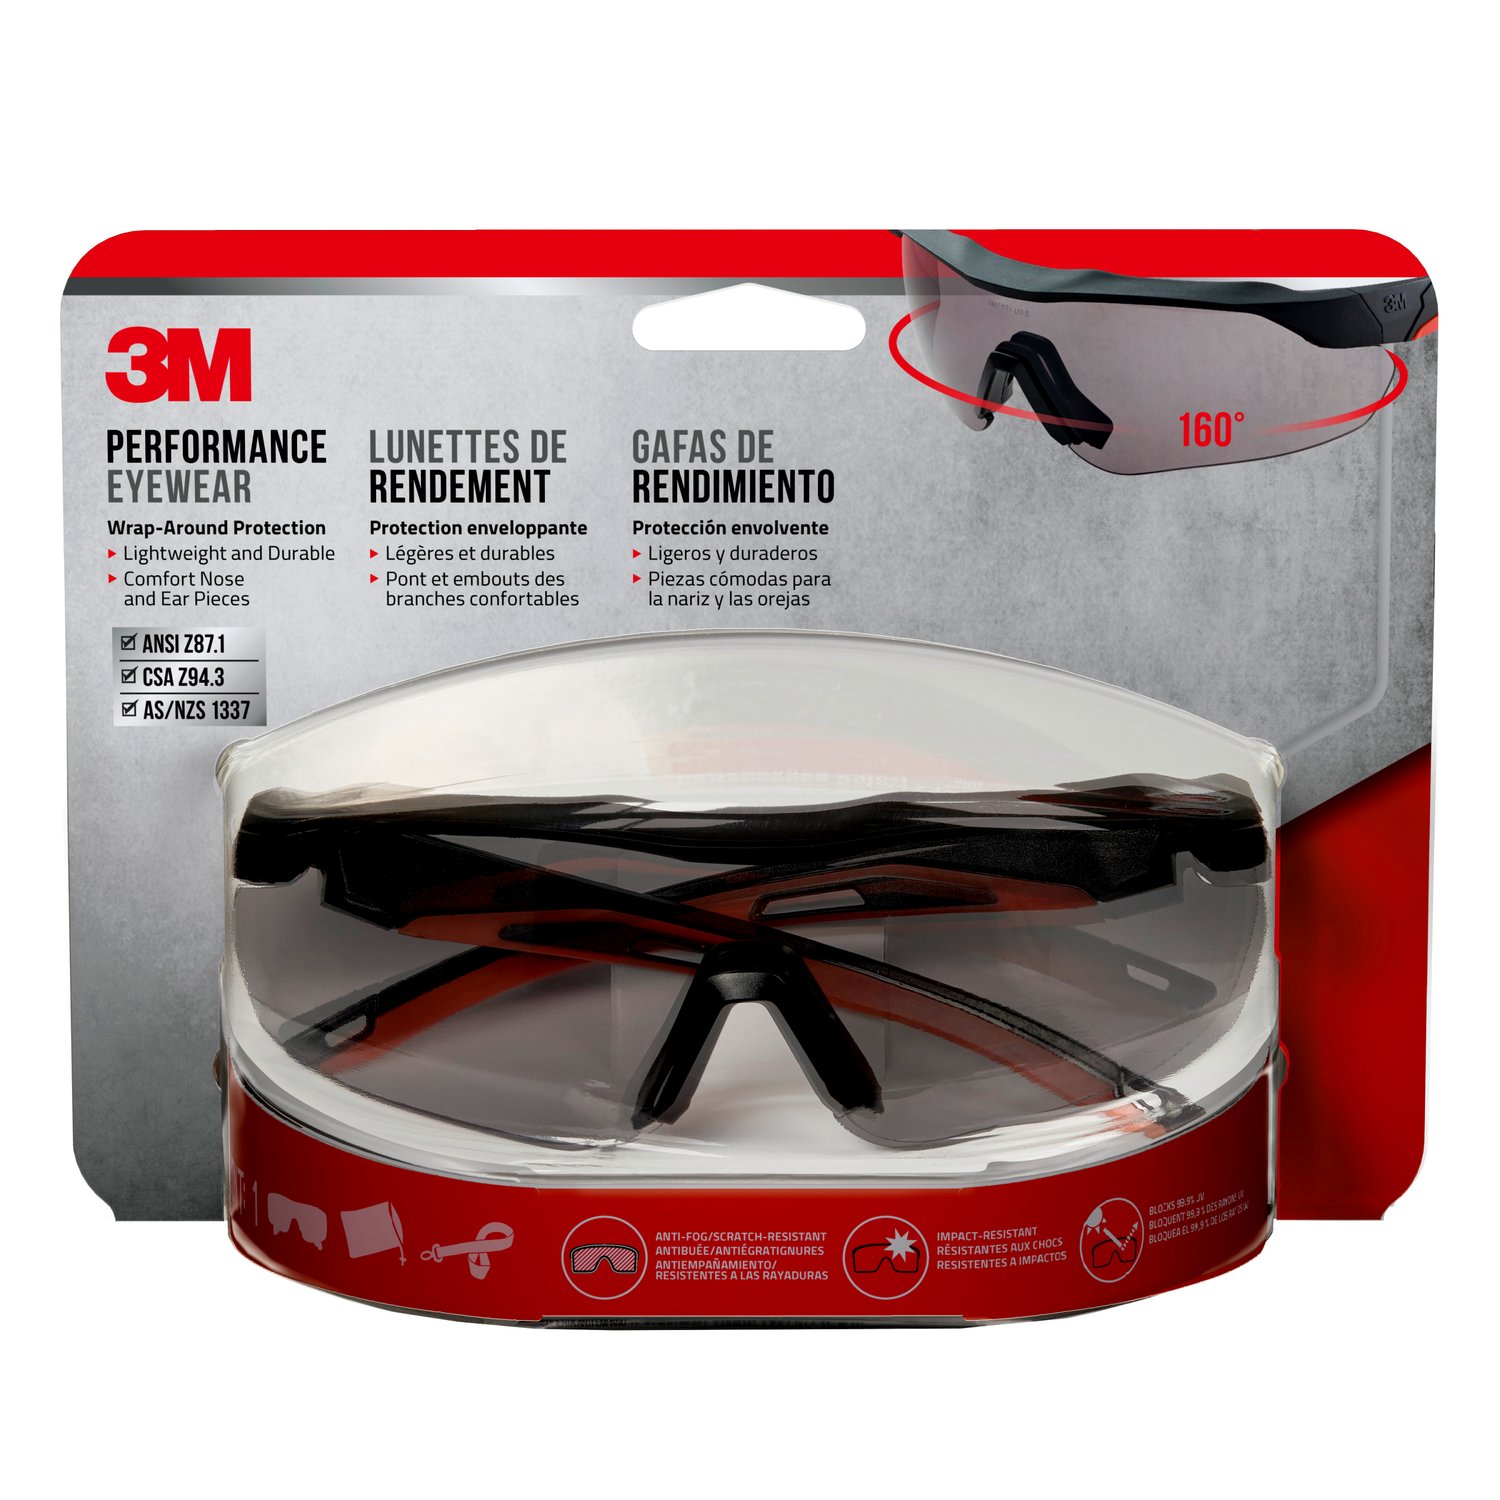 7100153473 - 3M Performance Eyewear Anti-Fog, 47091H1-DC, Black/Red, Gray Lens,
4/case